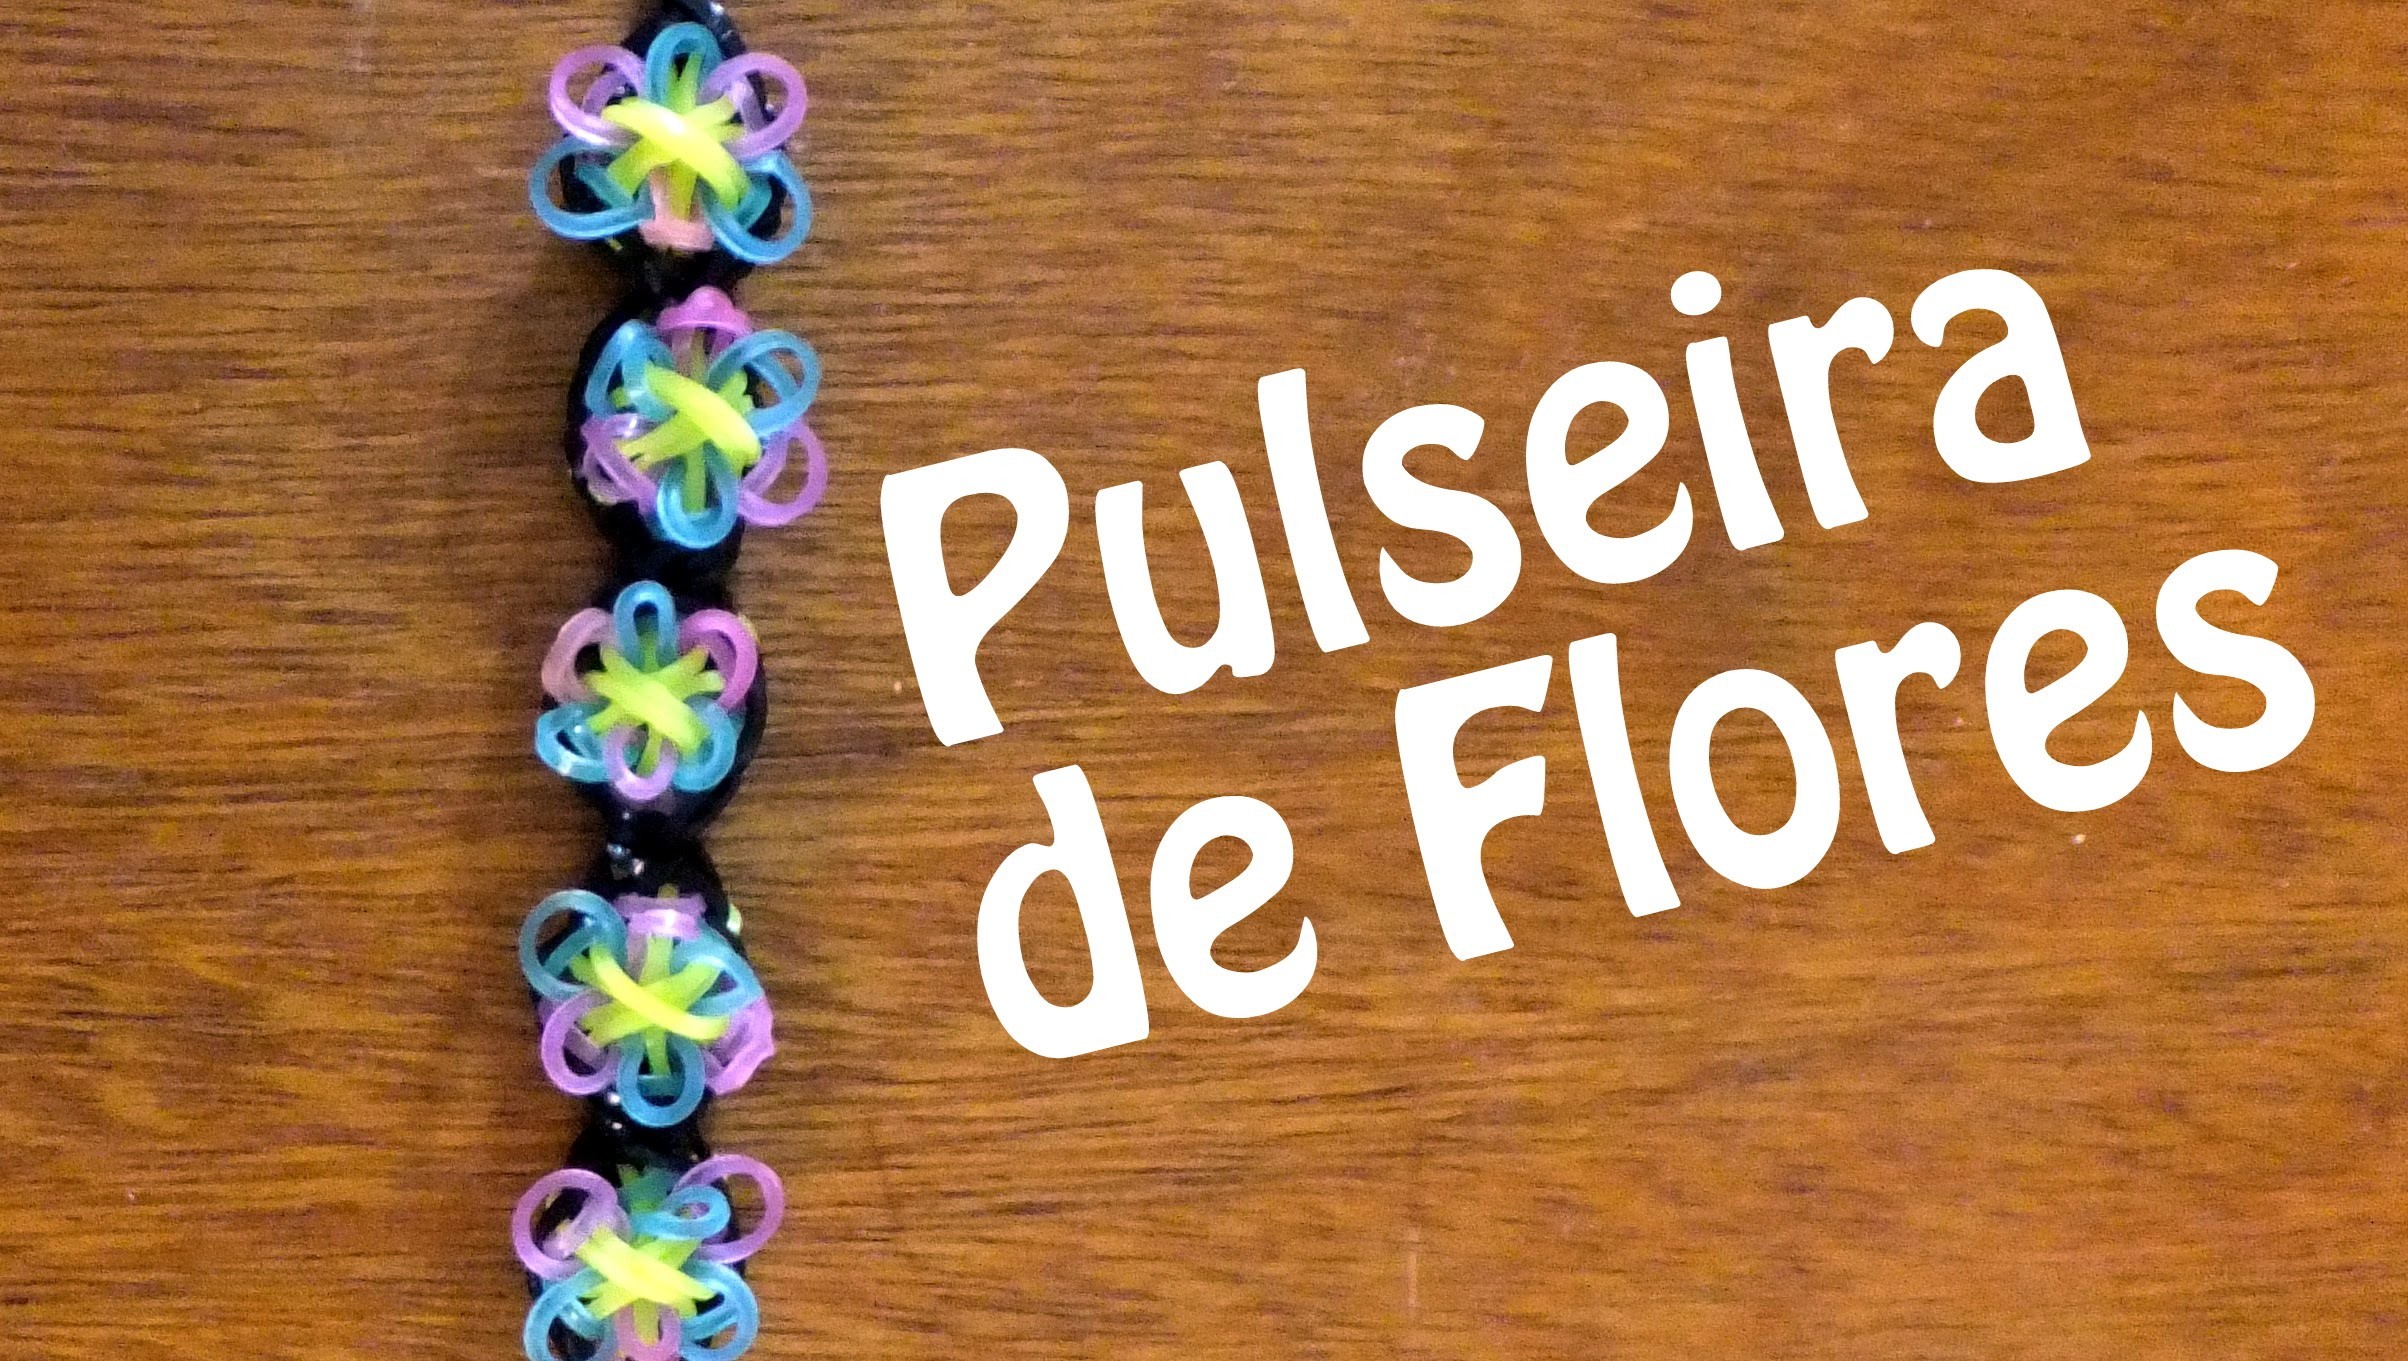 Como fazer uma pulseira de flores de elasticos rainbow loom